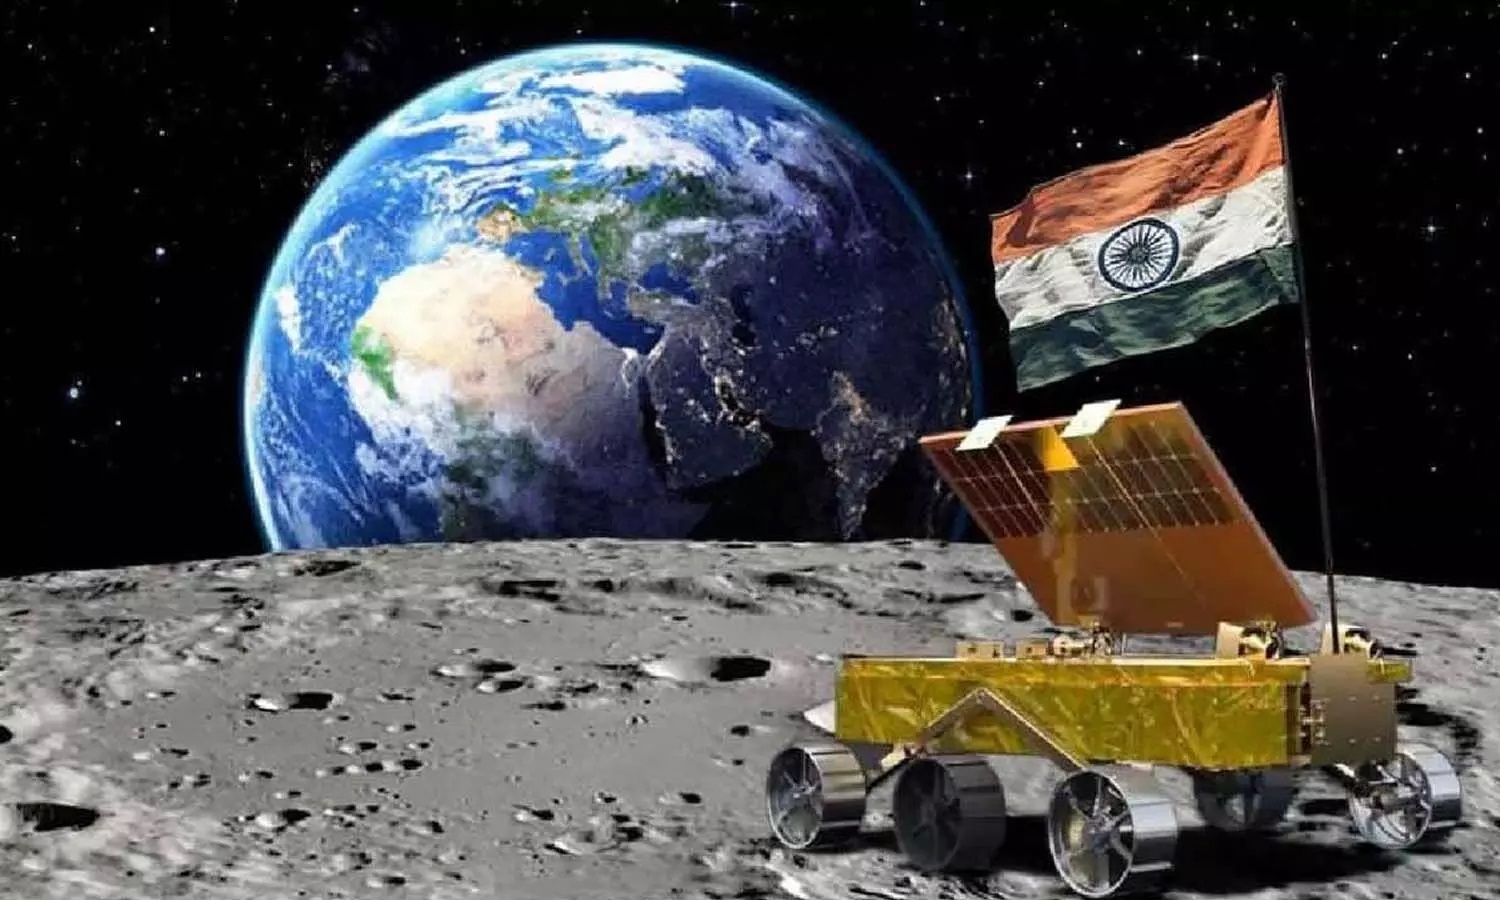 Chandrayaan 3: ISRO की उपलब्धि पर मोदी सरकार का बड़ा ऐलान- साल 23 इस दिन राष्ट्रीय अंतरिक्ष दिवस मनेगा, चंद्रयान 3 ने इतिहास रचा